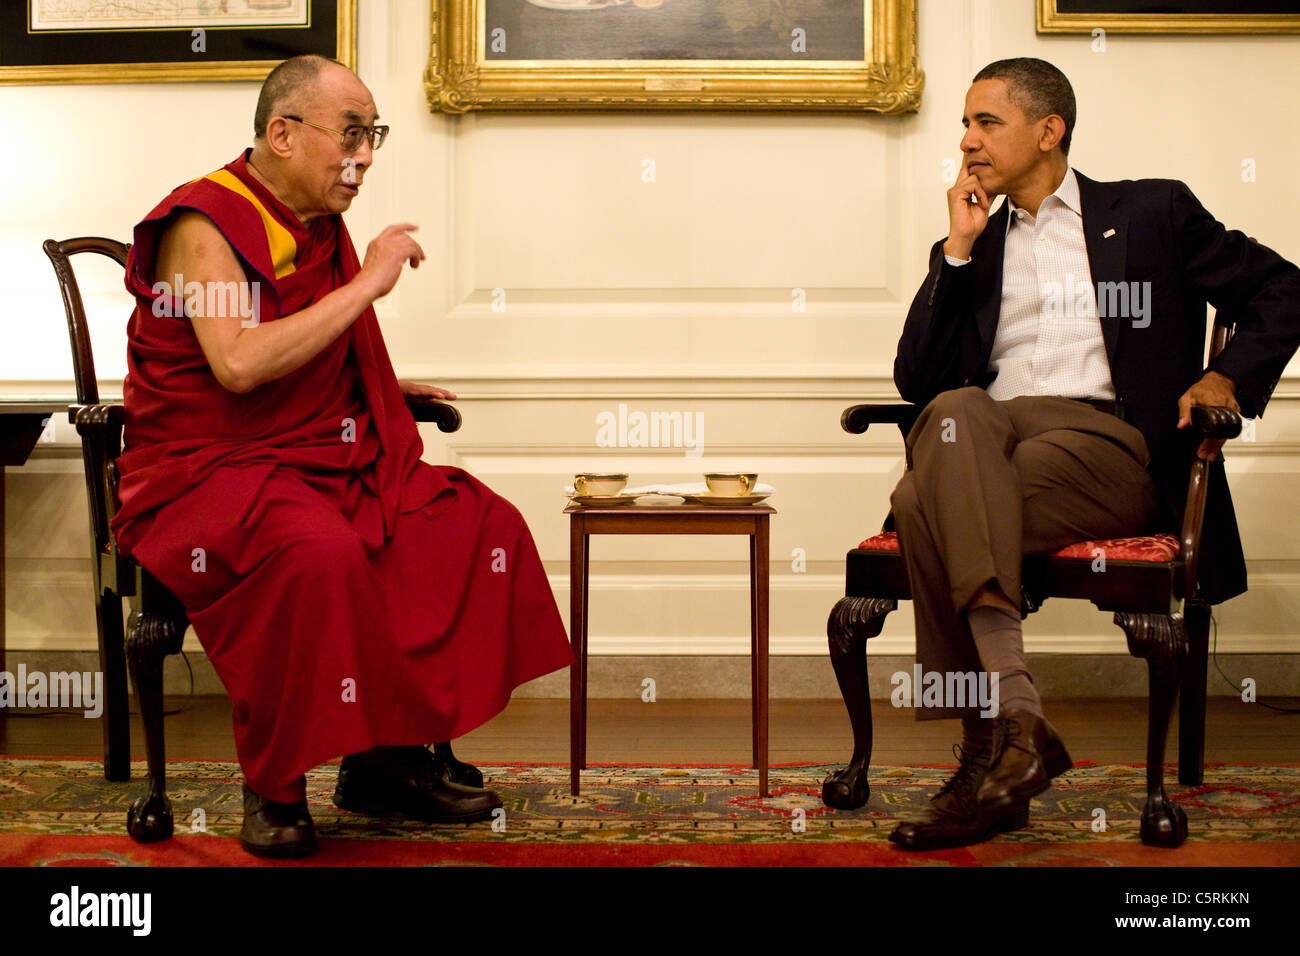 Präsident Barack Obama trifft mit seiner Heiligkeit dem XIV. Dalai Lama in der Map Room des weißen Hauses, Samstag, 16. Juli 2011. Stockfoto